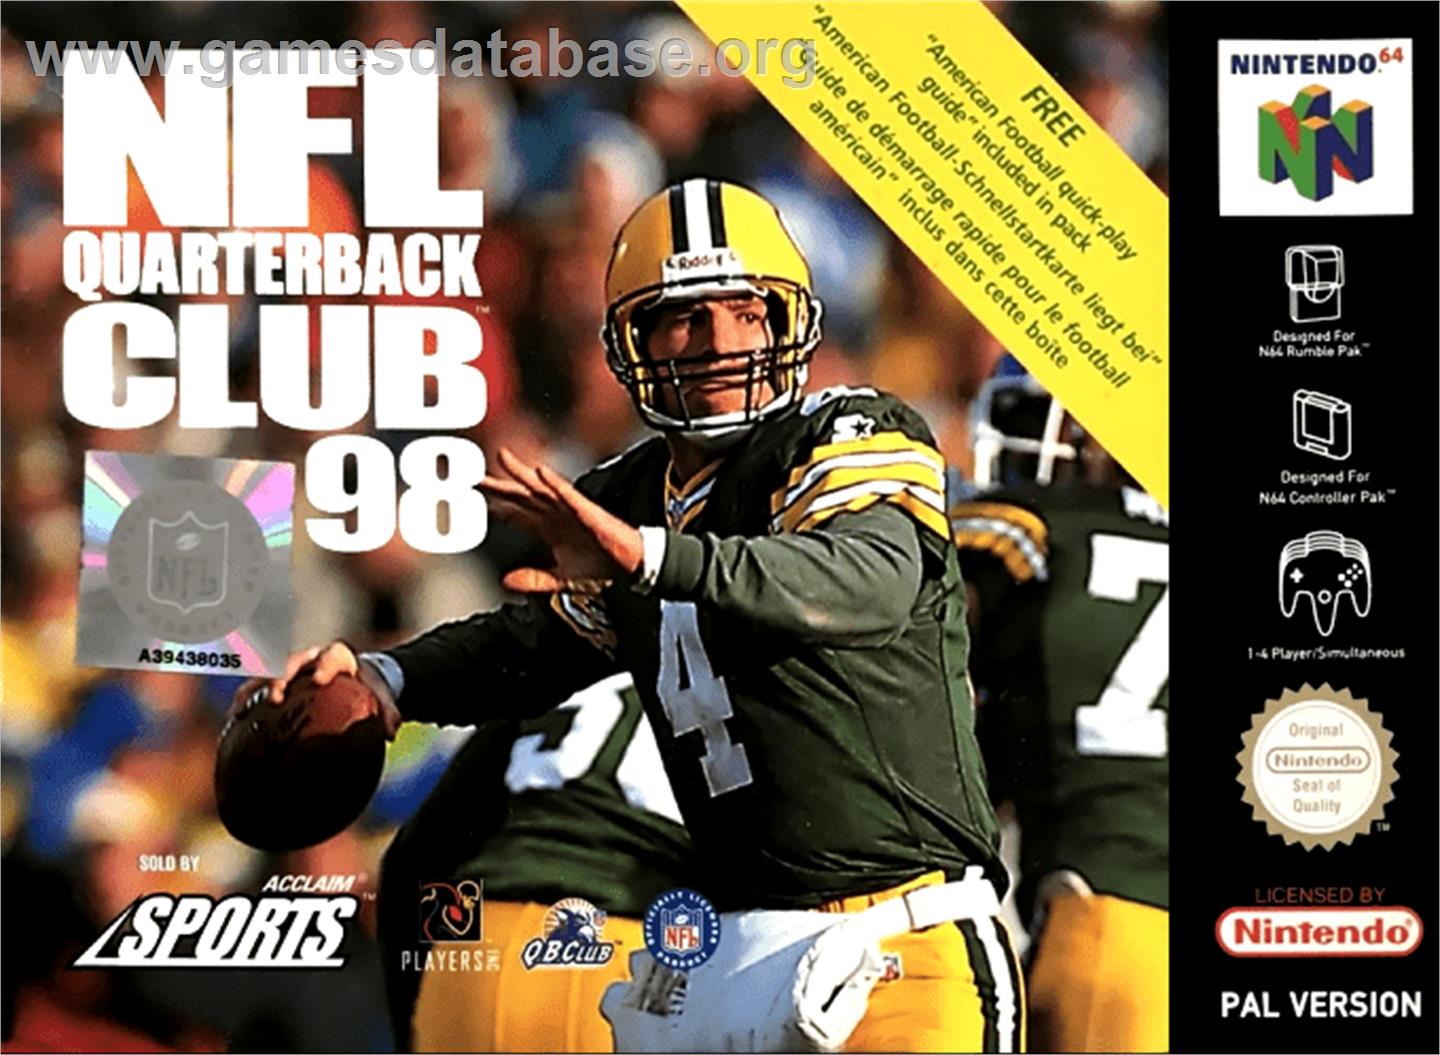 NFL Quarterback Club '98 - Nintendo N64 - Artwork - Box